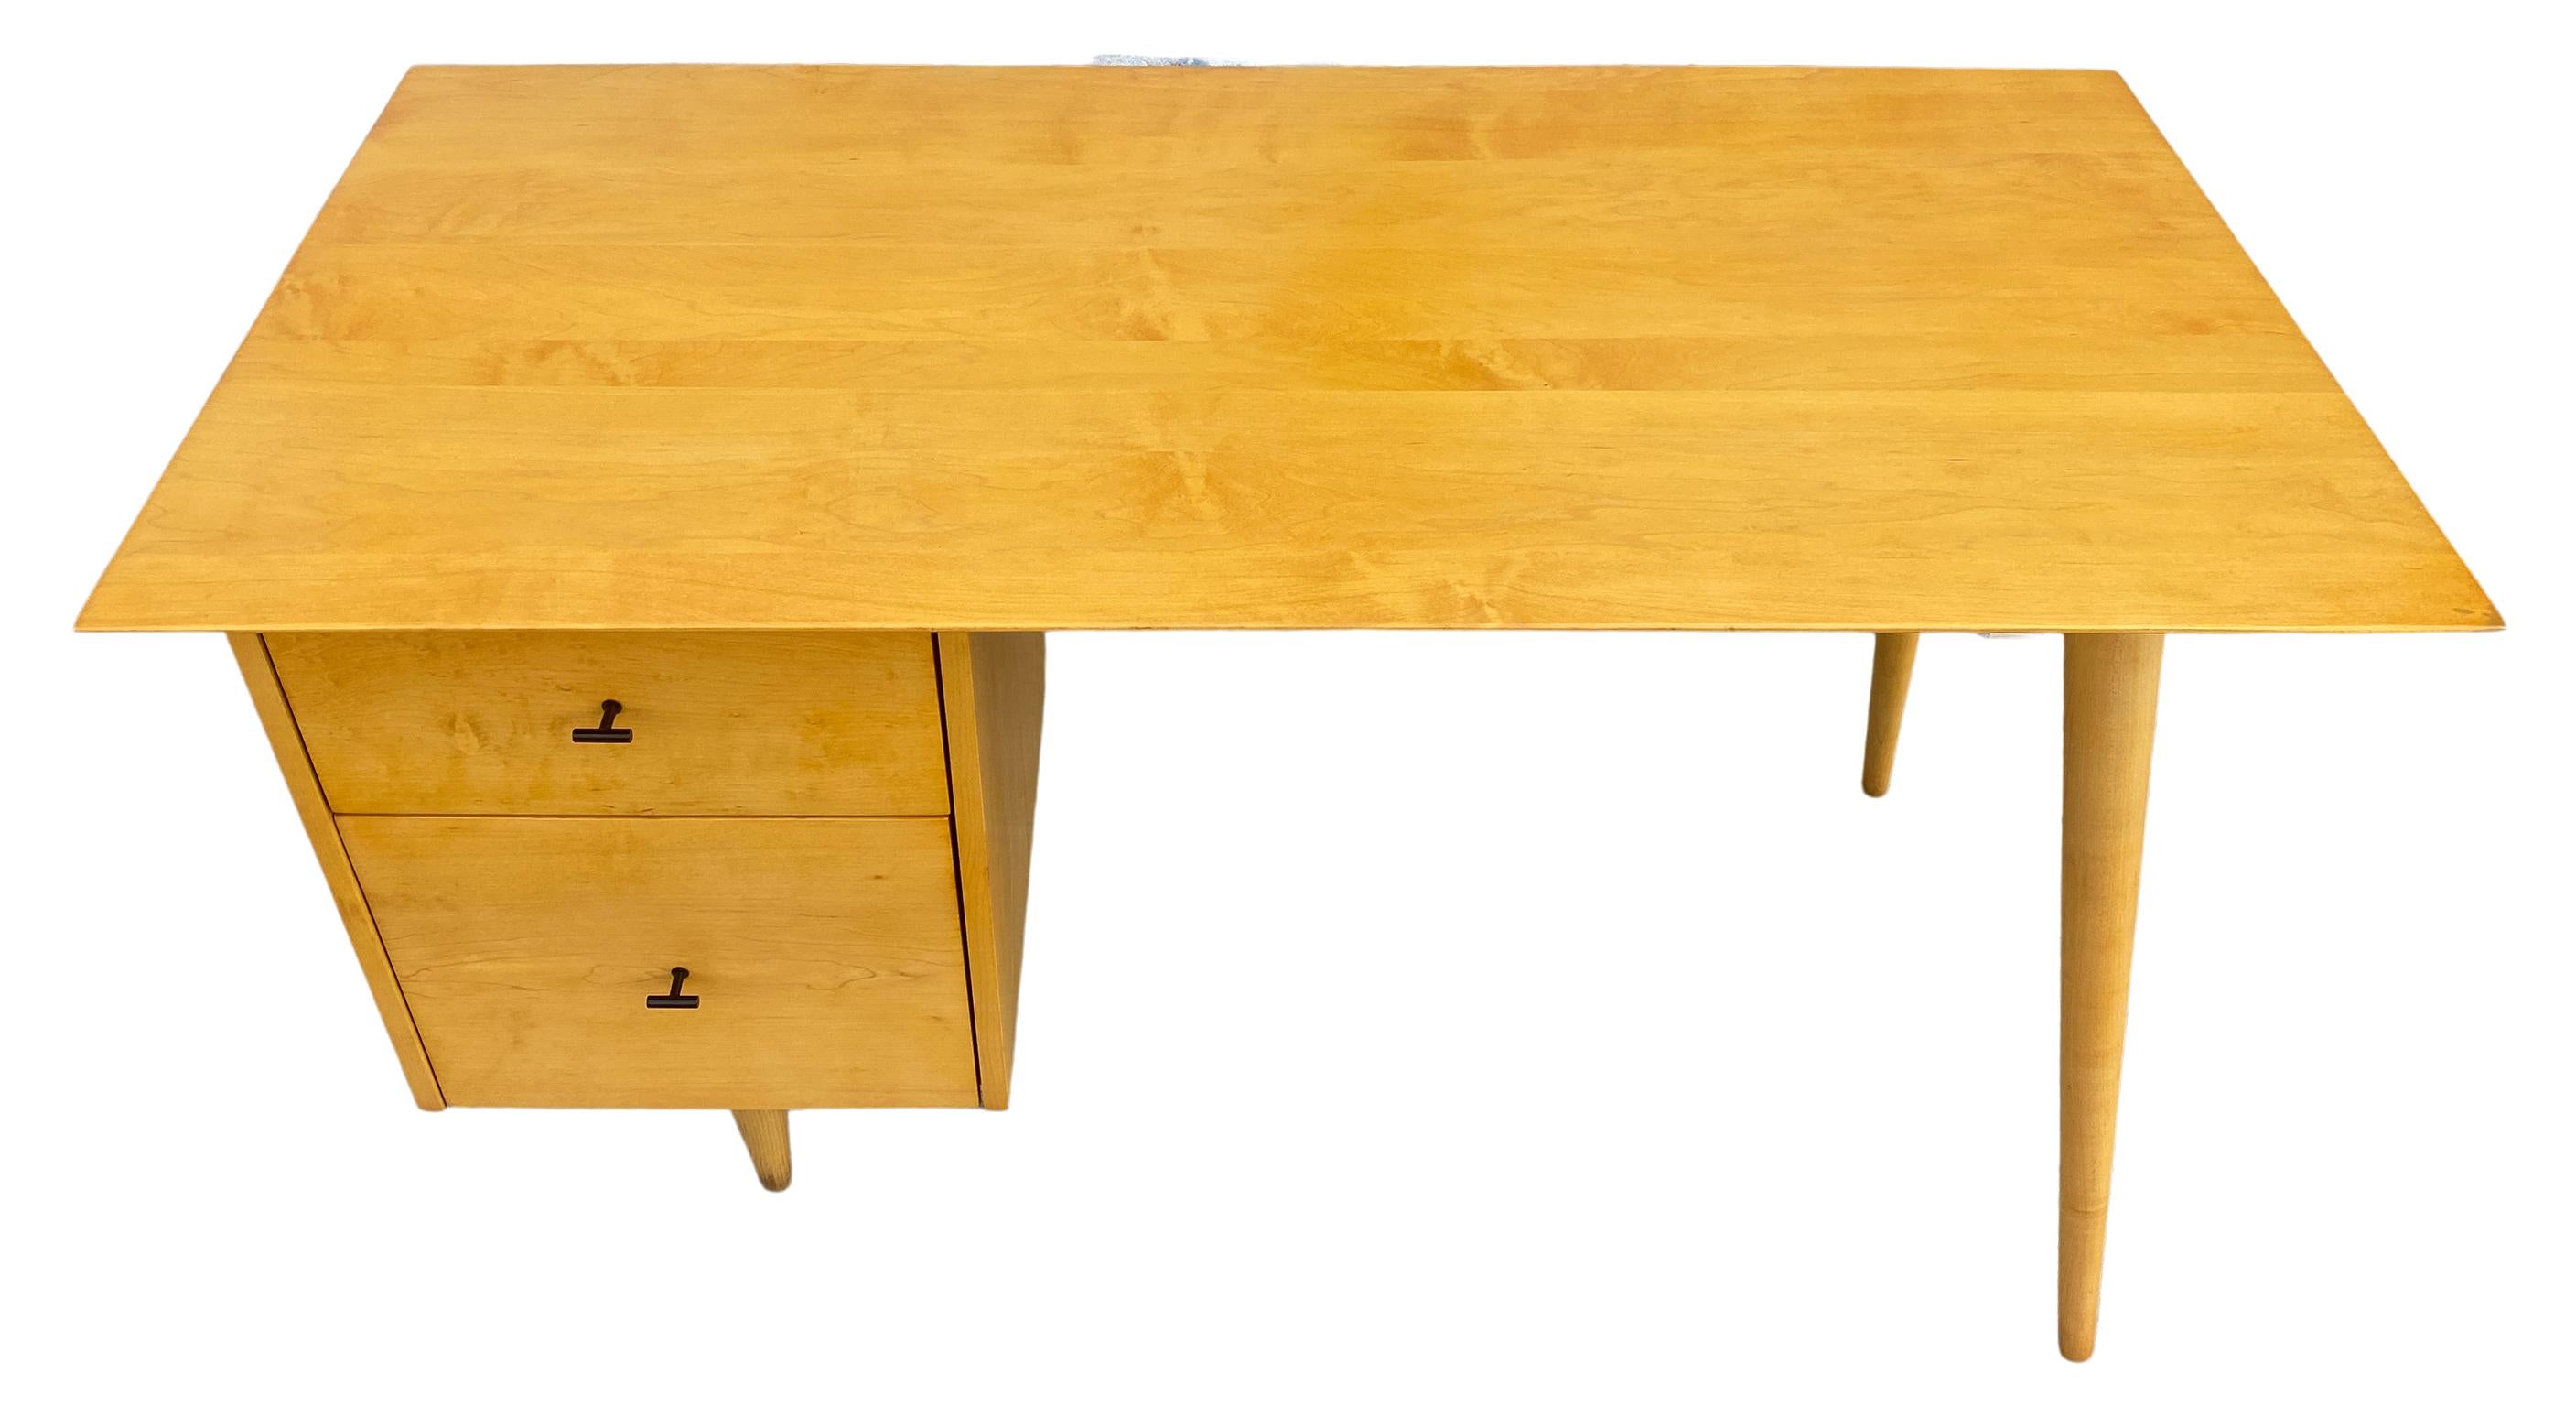 Schöne Paul McCobb Planner Group #1560 Doppel-Schublade Schreibtisch blond Ahorn Finish mit Stahl T ziehen Knöpfe massivem Ahorn. Der Schreibtisch wurde professionell aufgearbeitet. Sehr schön gestalteter Schreibtisch auf konischen Beinen, ganz aus